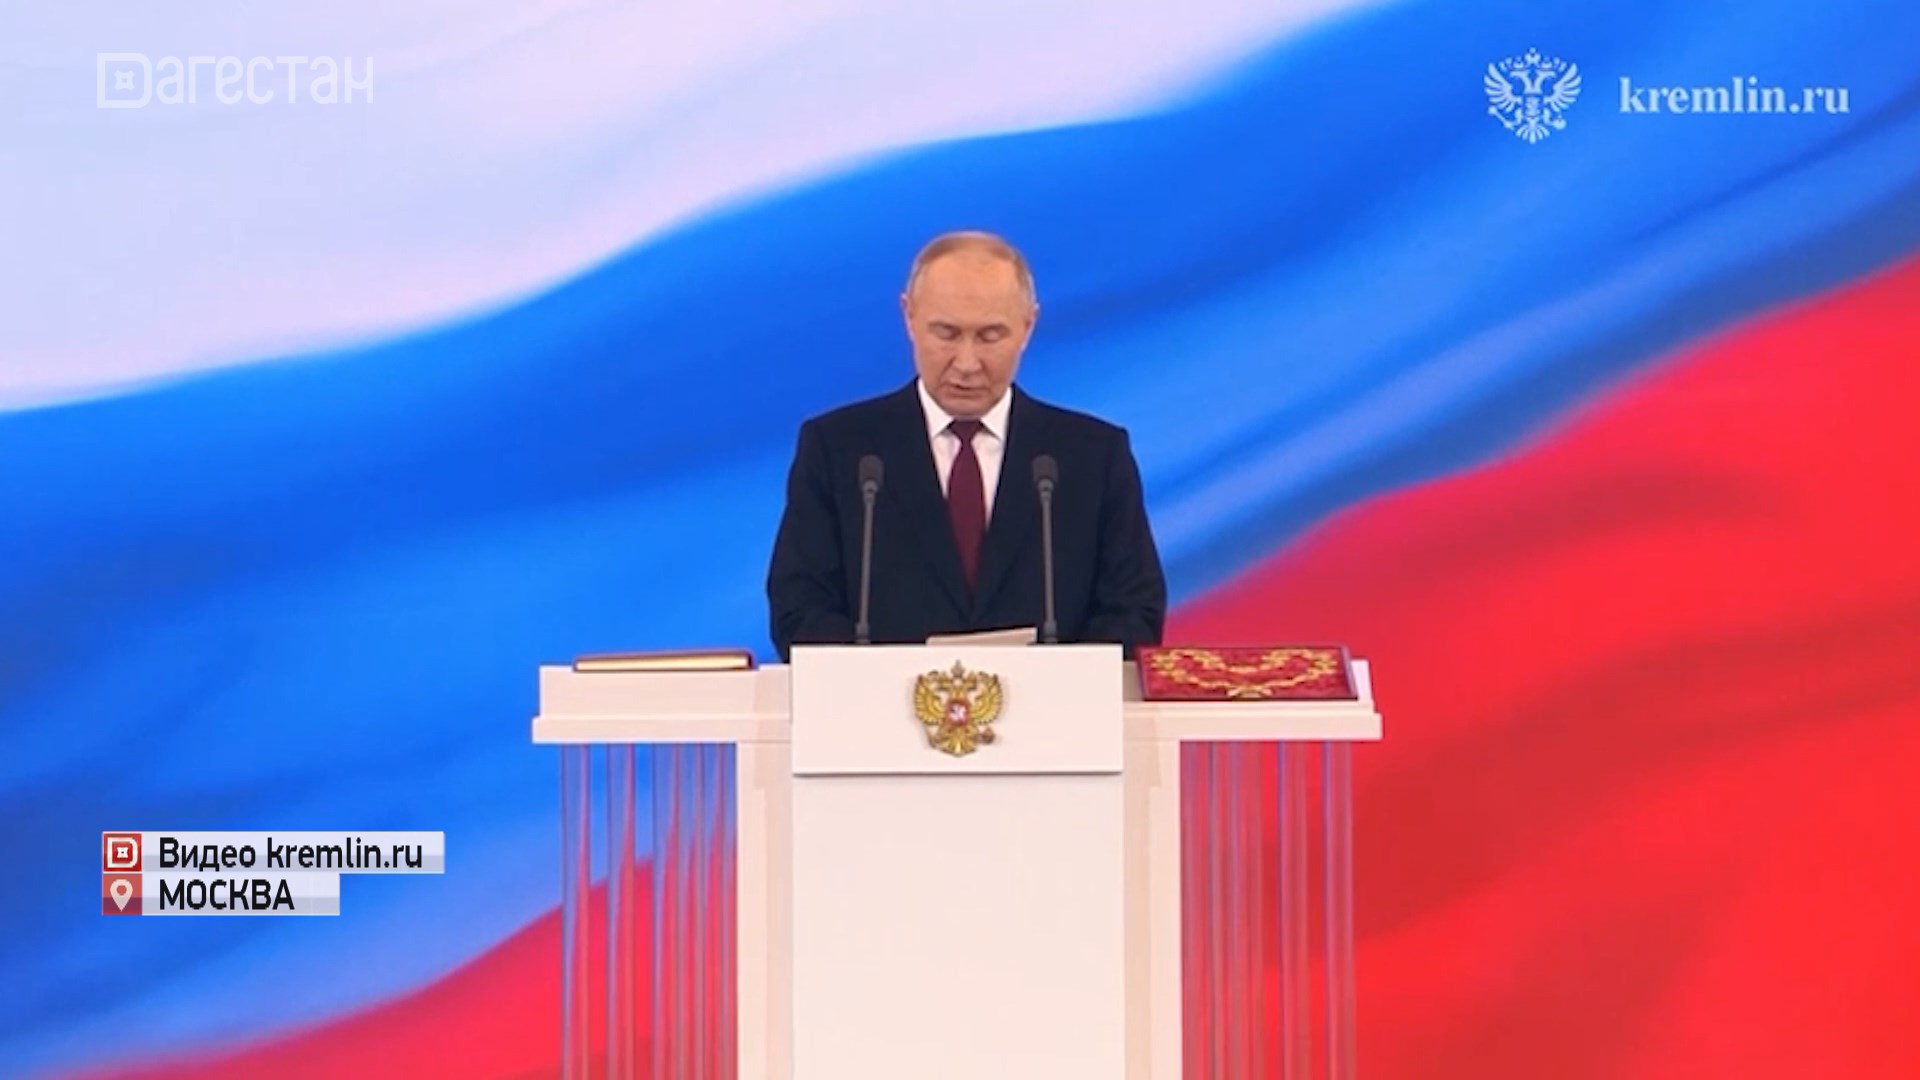 Сегодня прошла инаугурация президента России Владимира Путина